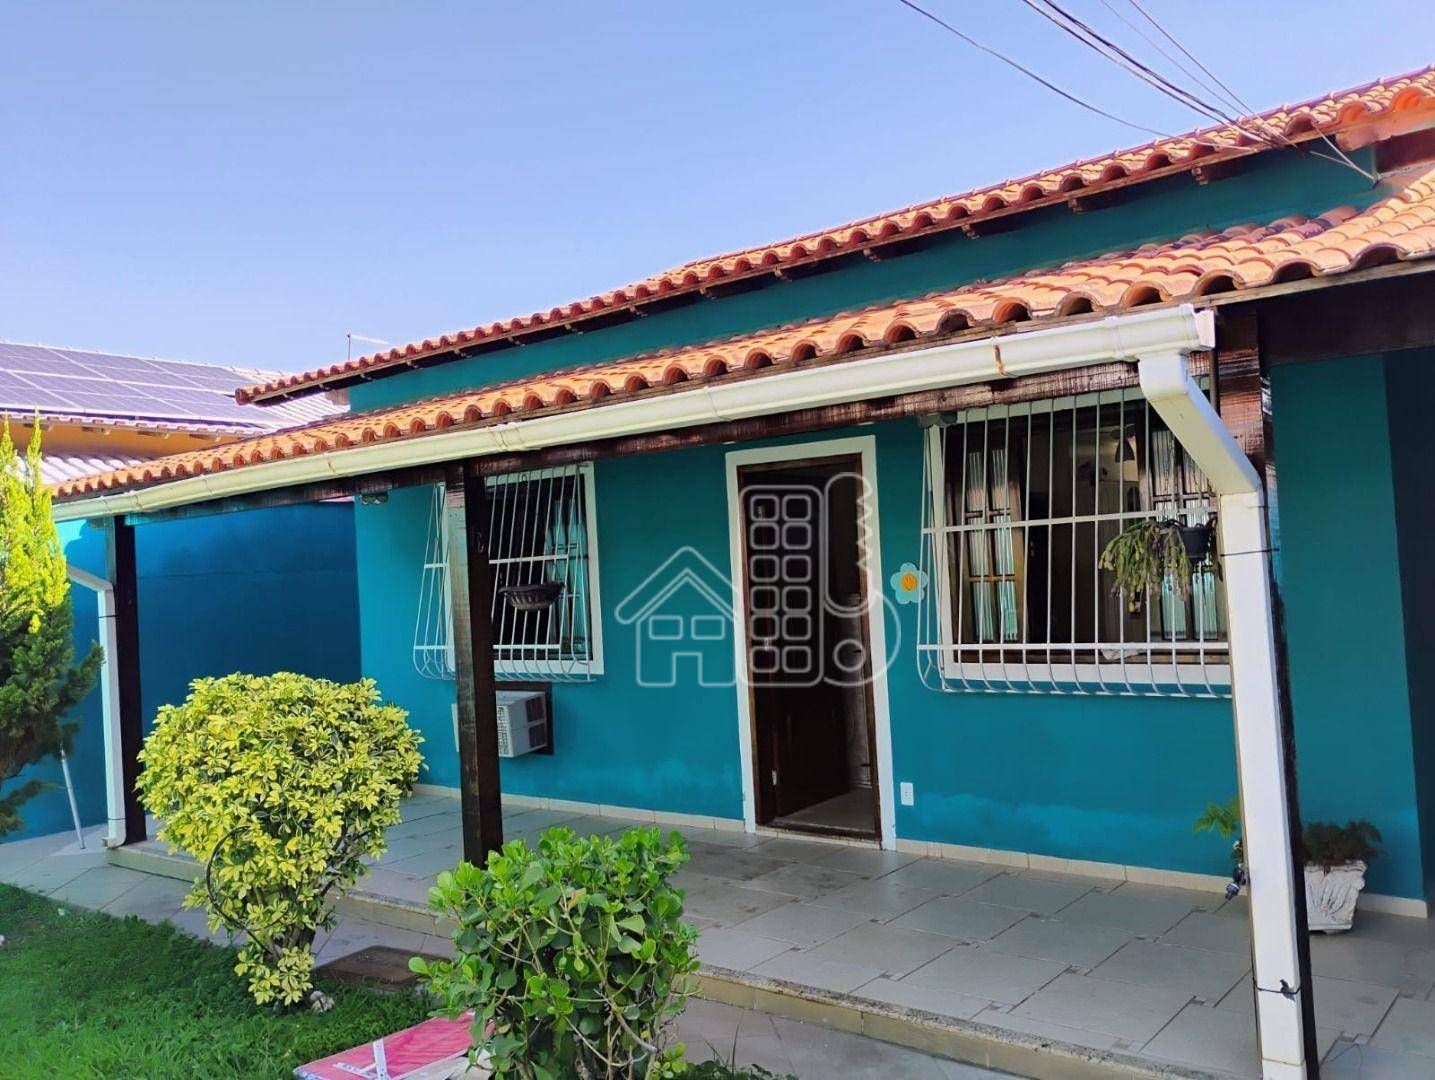 Casa com 3 dormitórios para alugar, 100 m² por R$ 3.000,00/mês - Praia de Itaipuaçu (Itaipuaçu) - Maricá/RJ